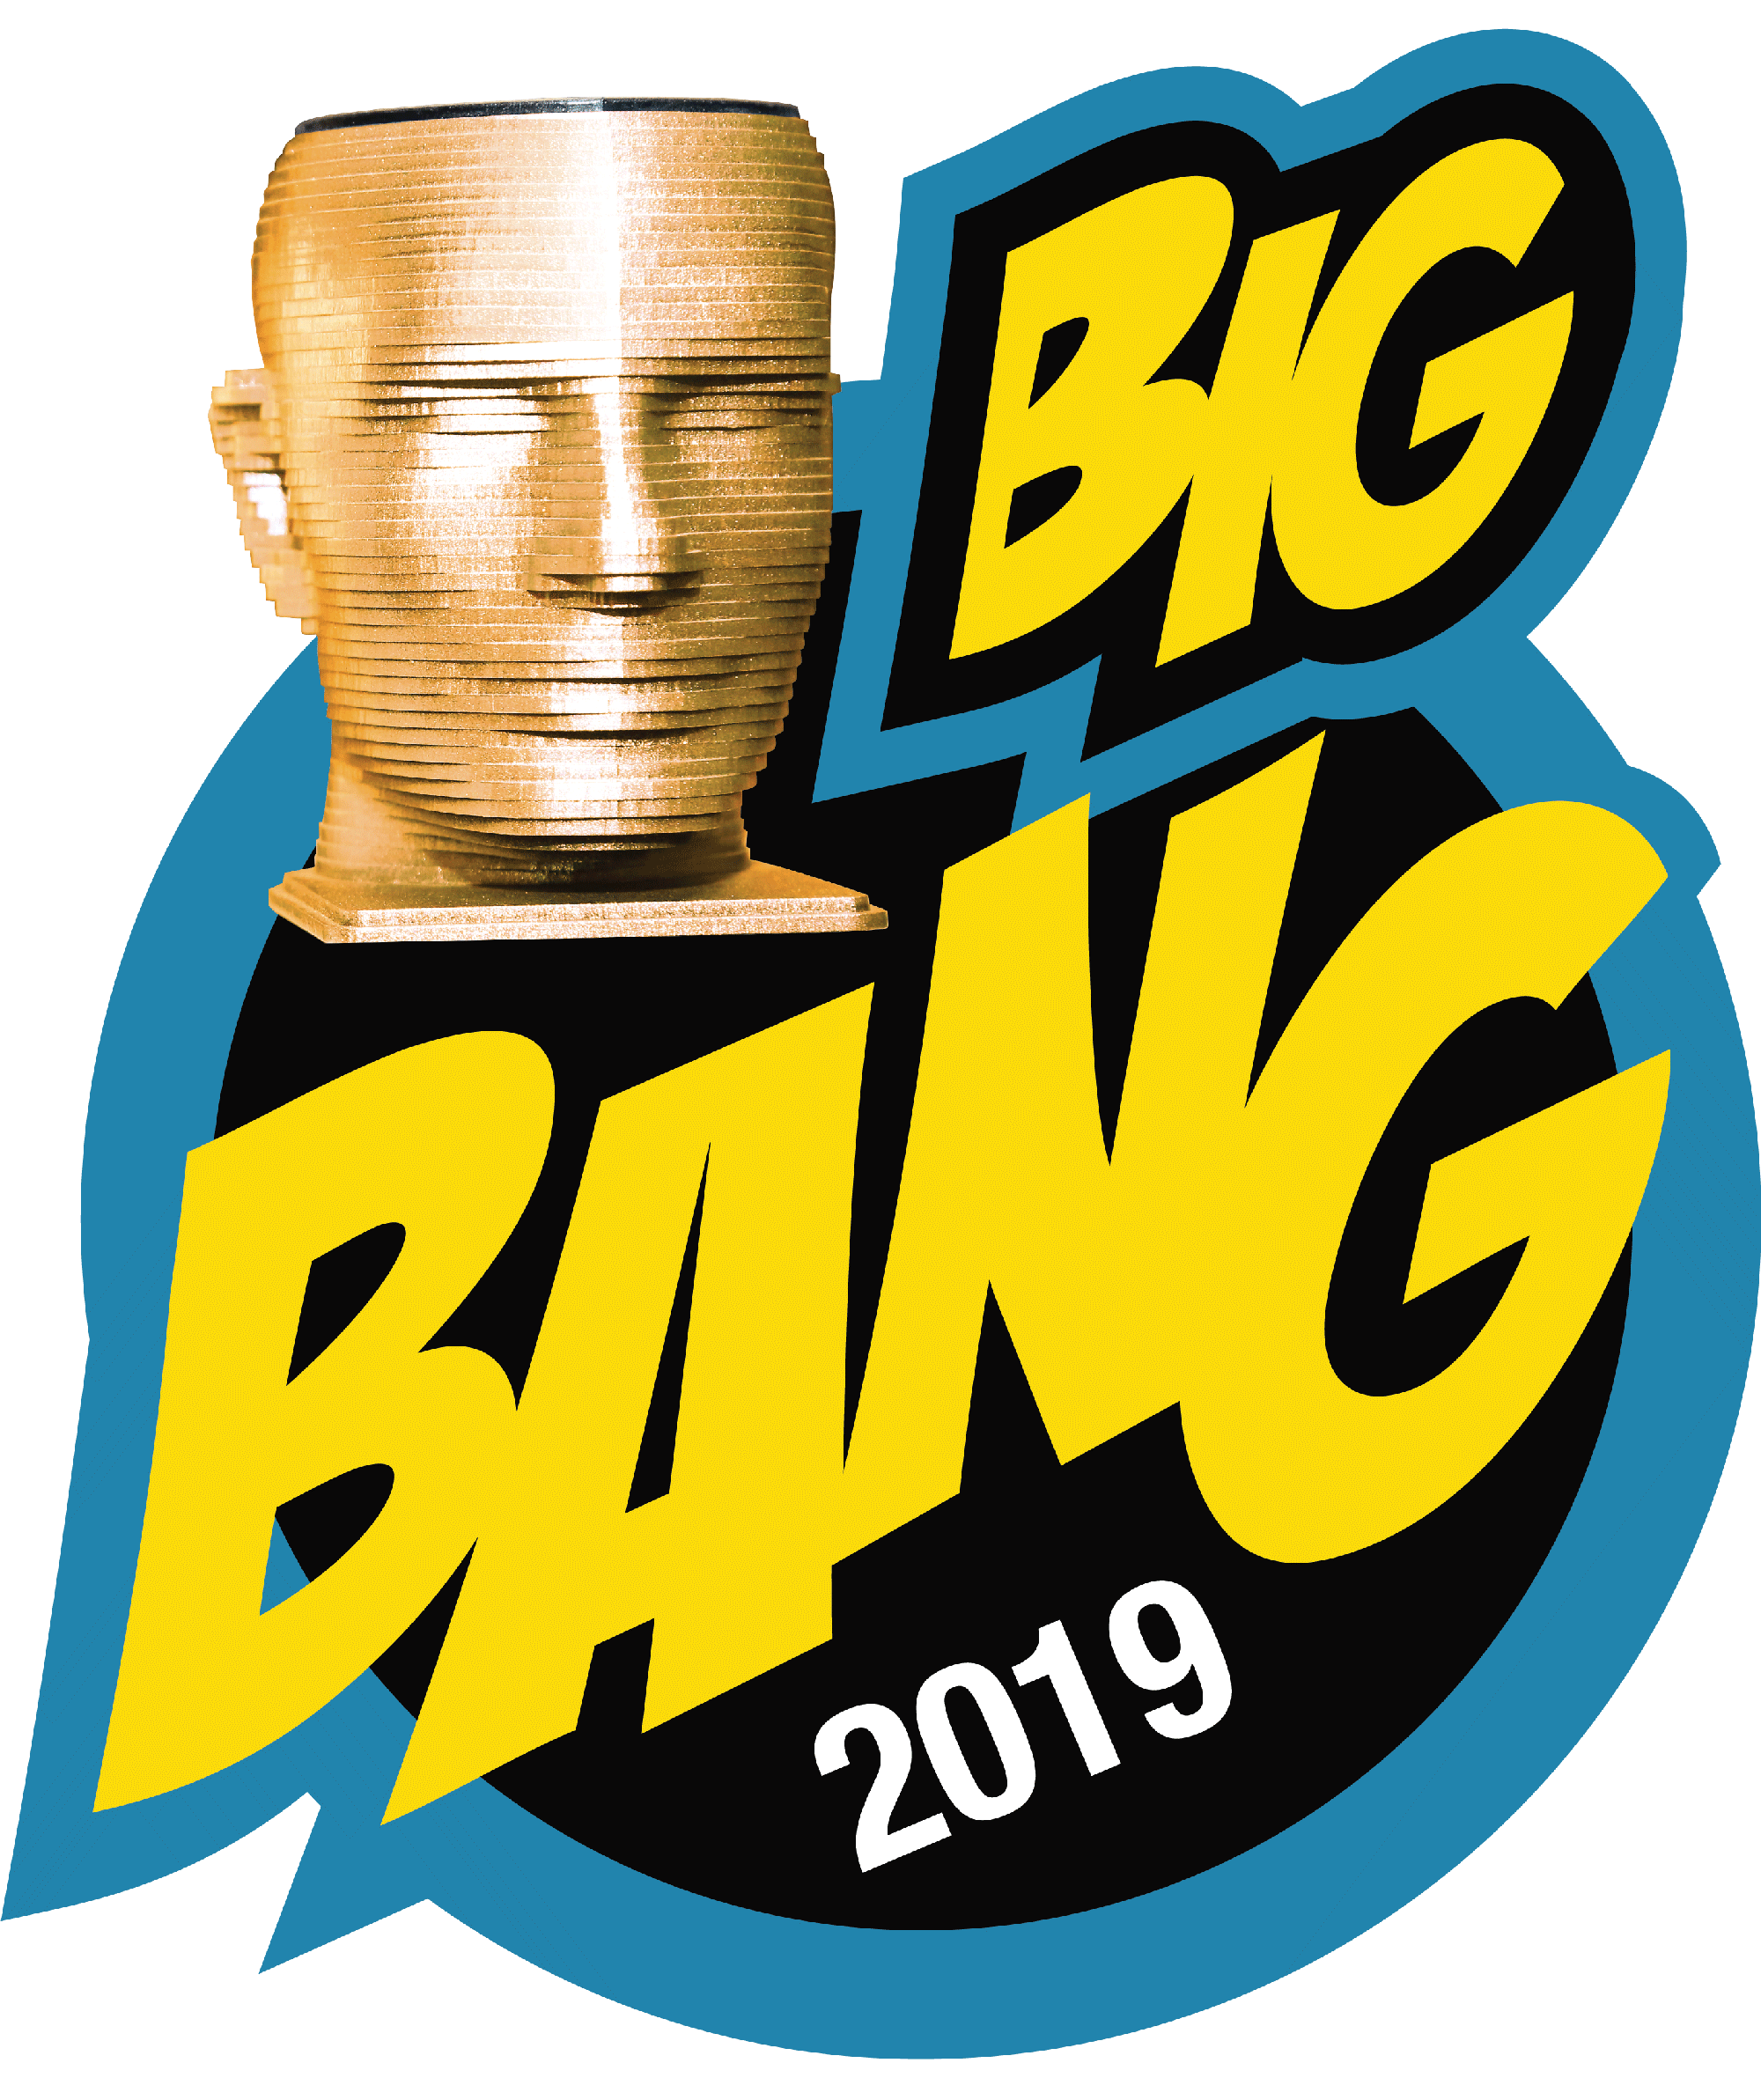 bigbang logo 2022